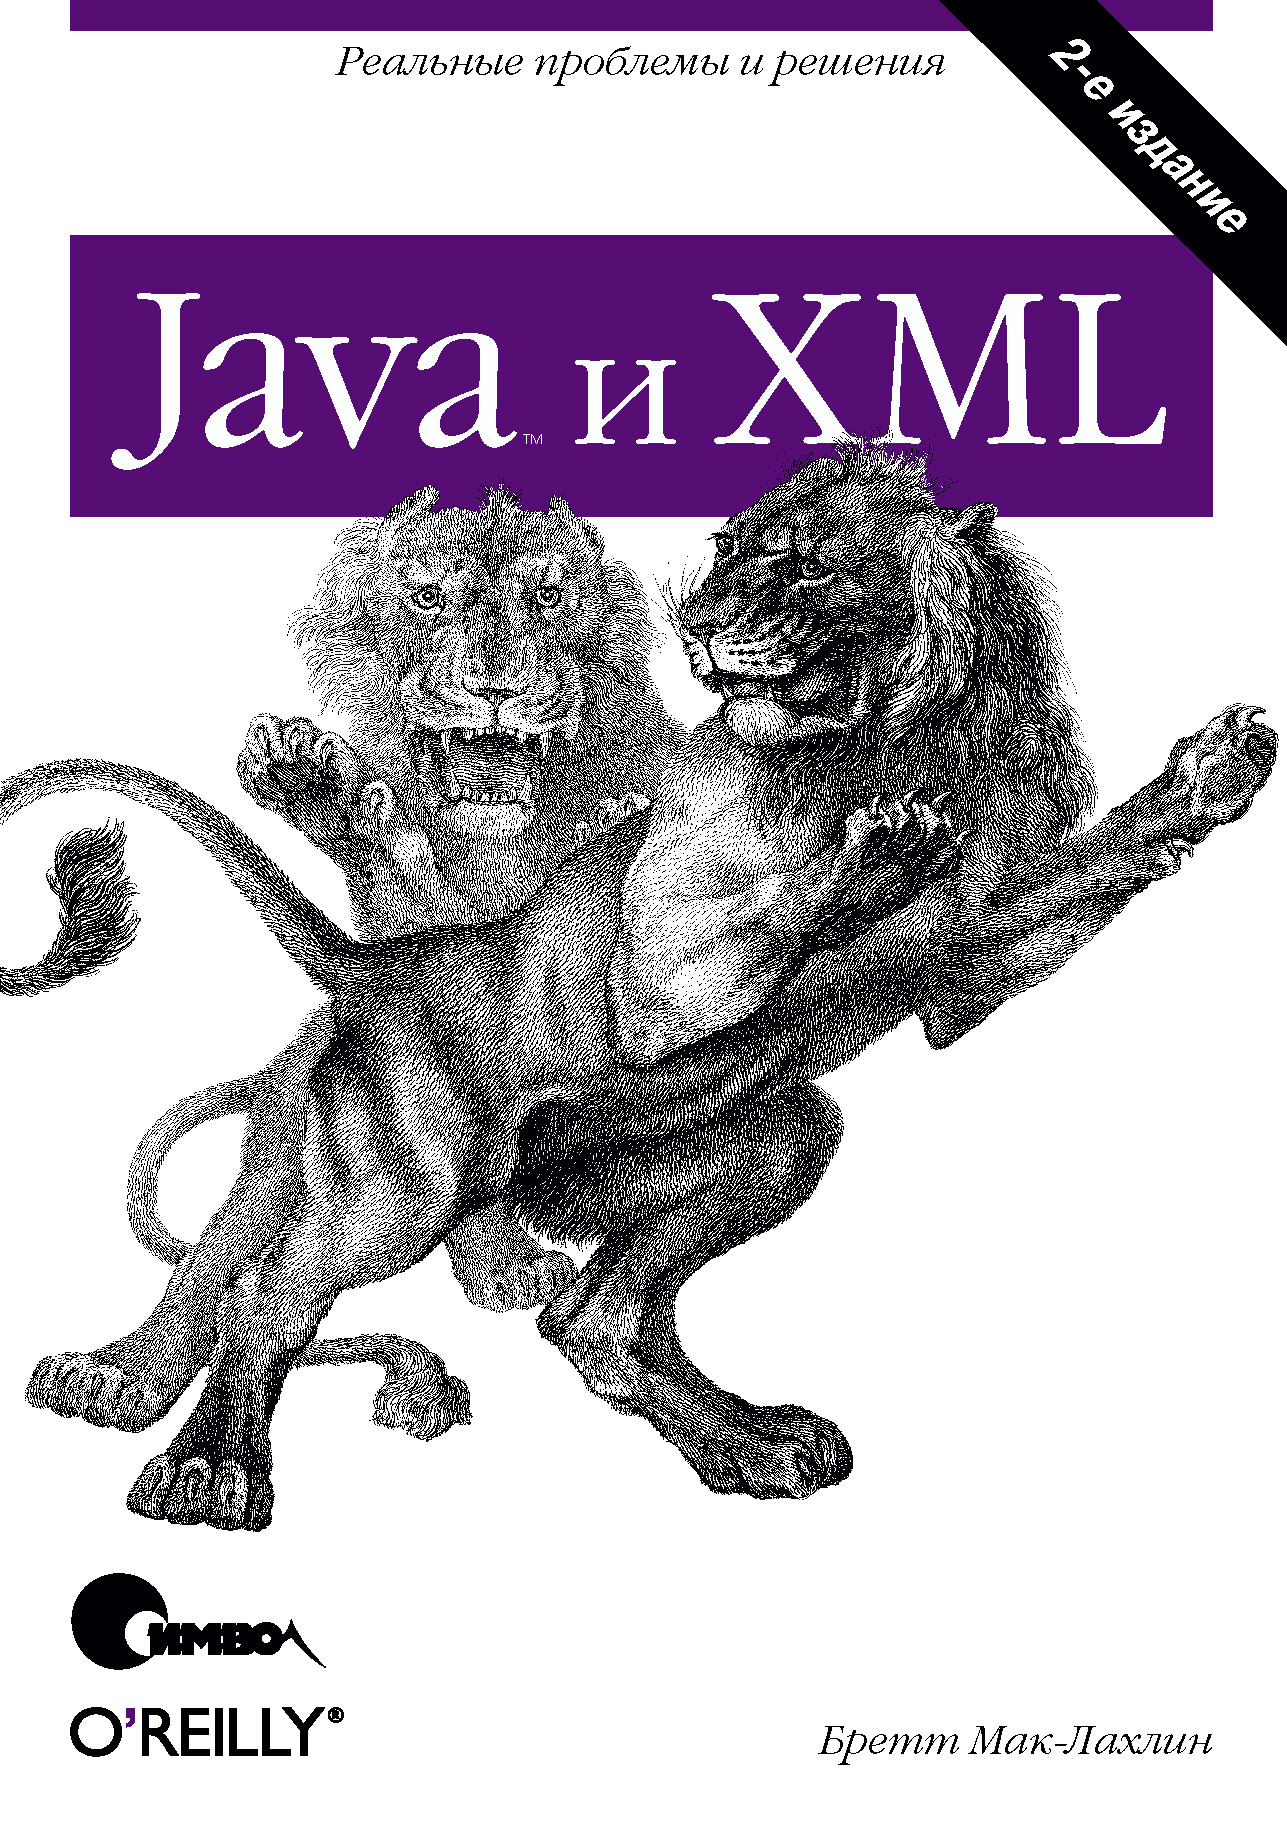 Книга  Java и XML. 2-е издание созданная Бретт Мак-Лахлин, Т. Морозова может относится к жанру зарубежная компьютерная литература, интернет, книги о компьютерах, компьютерная справочная литература, программирование. Стоимость электронной книги Java и XML. 2-е издание с идентификатором 24500198 составляет 290.00 руб.